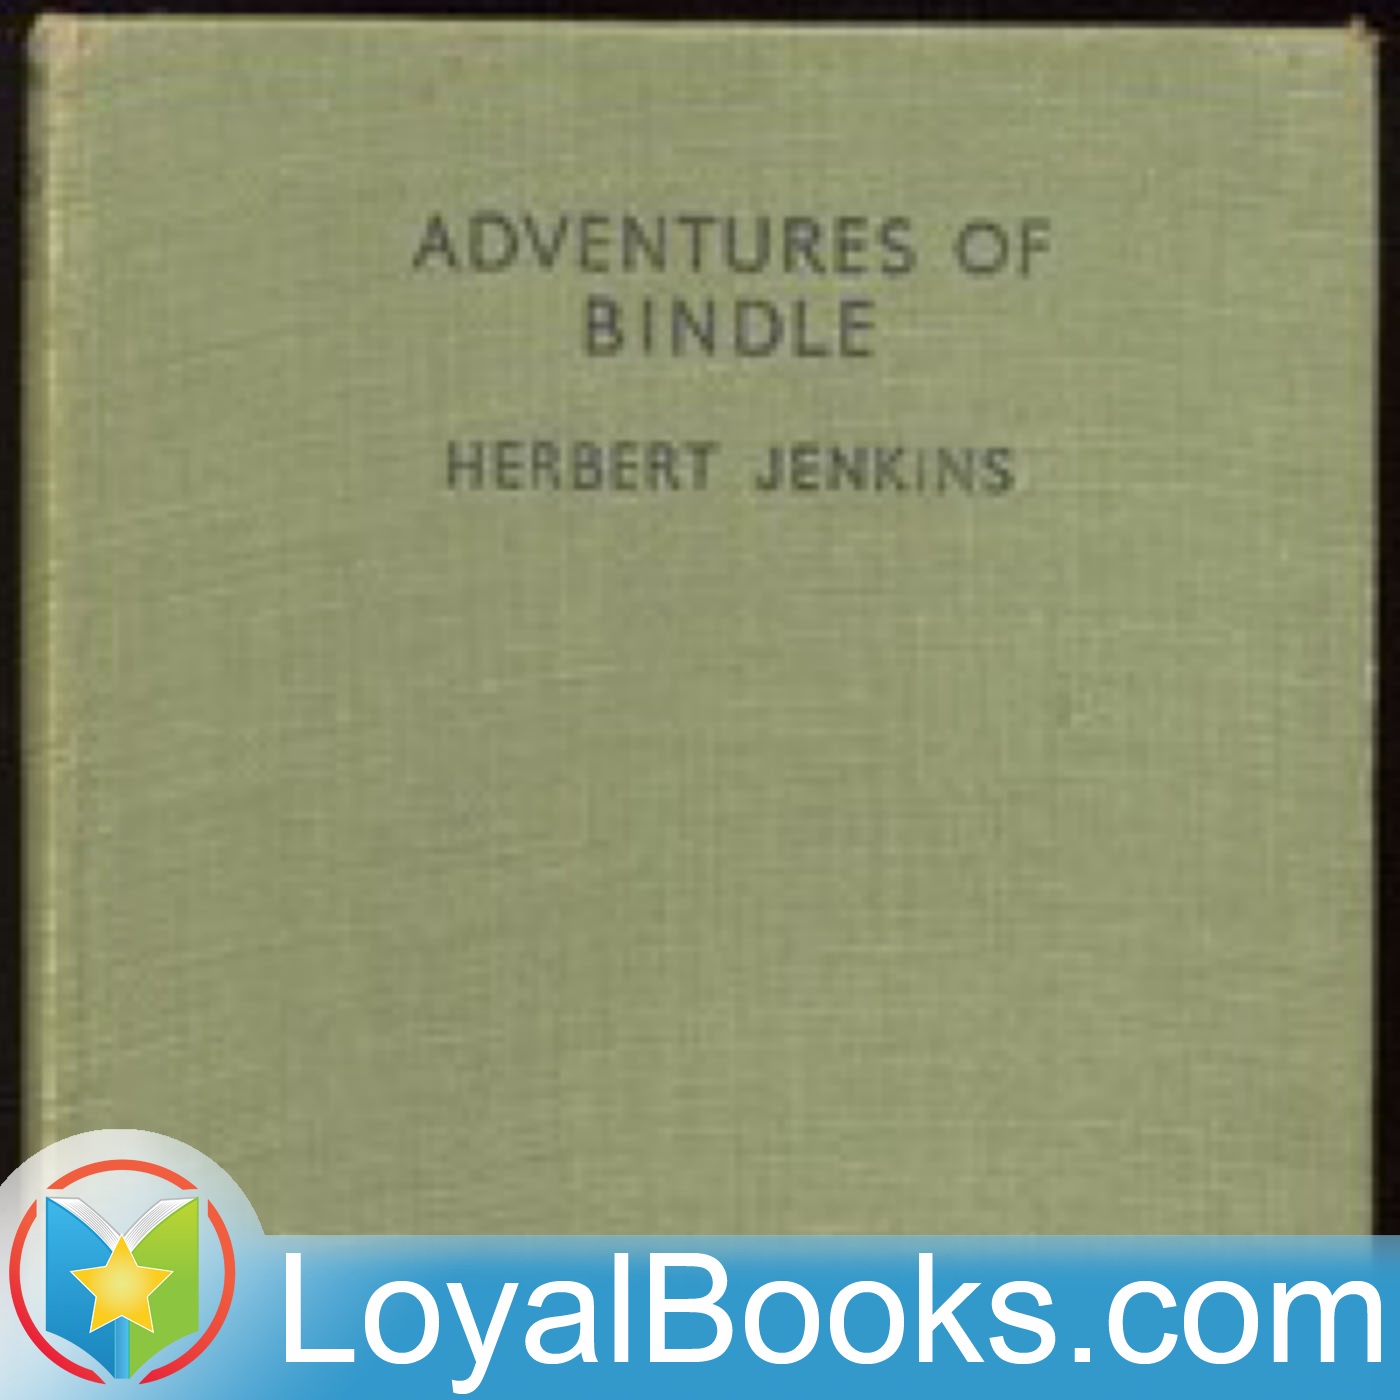 Adventures of Bindle by Herbert George Jenkins